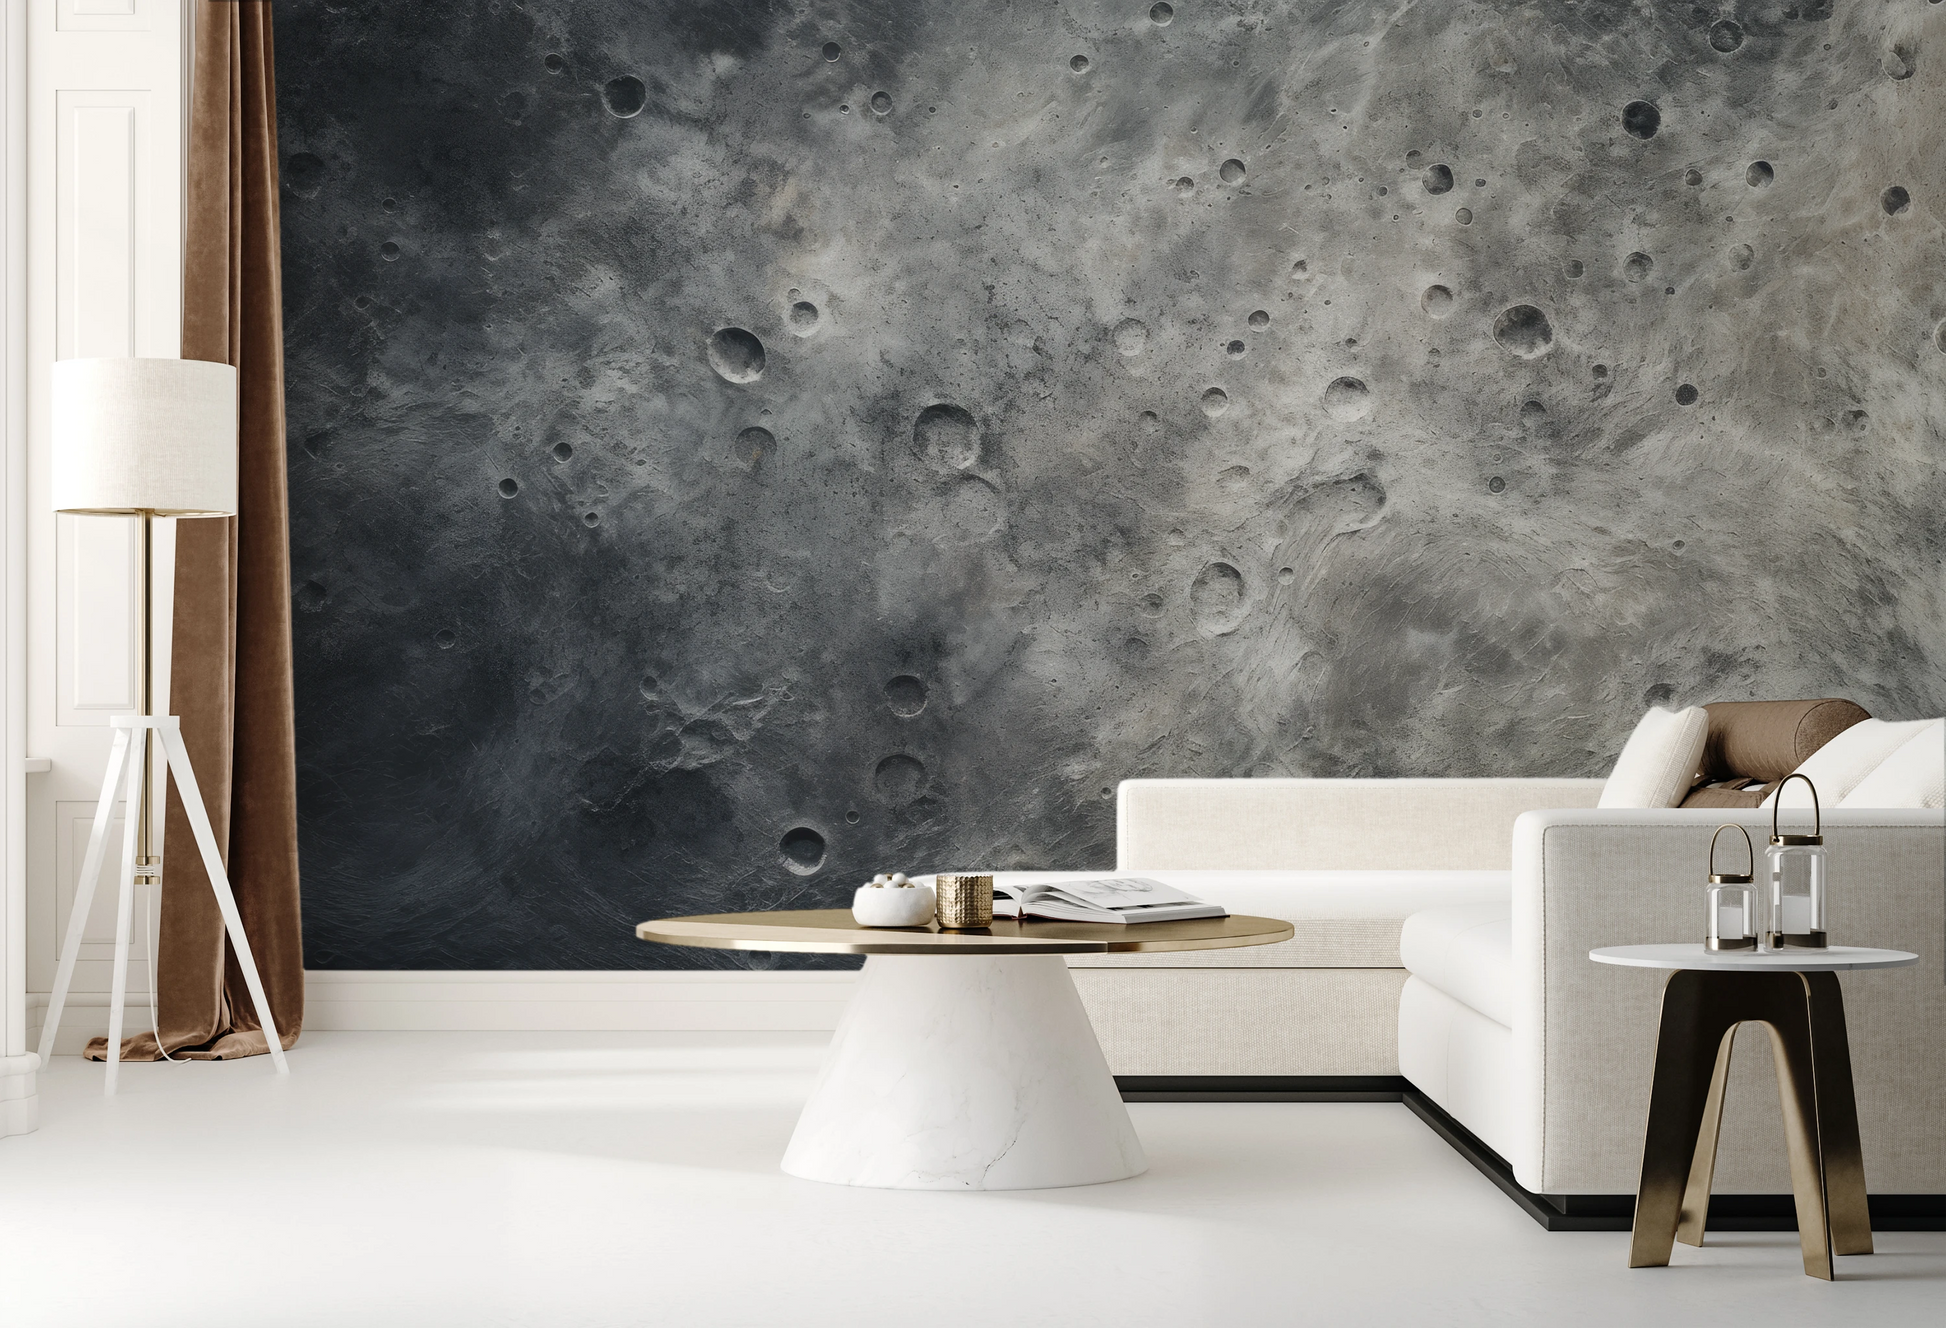 Wzór fototapety artystycznej o nazwie Lunar Desert pokazanej w aranżacji wnętrza.